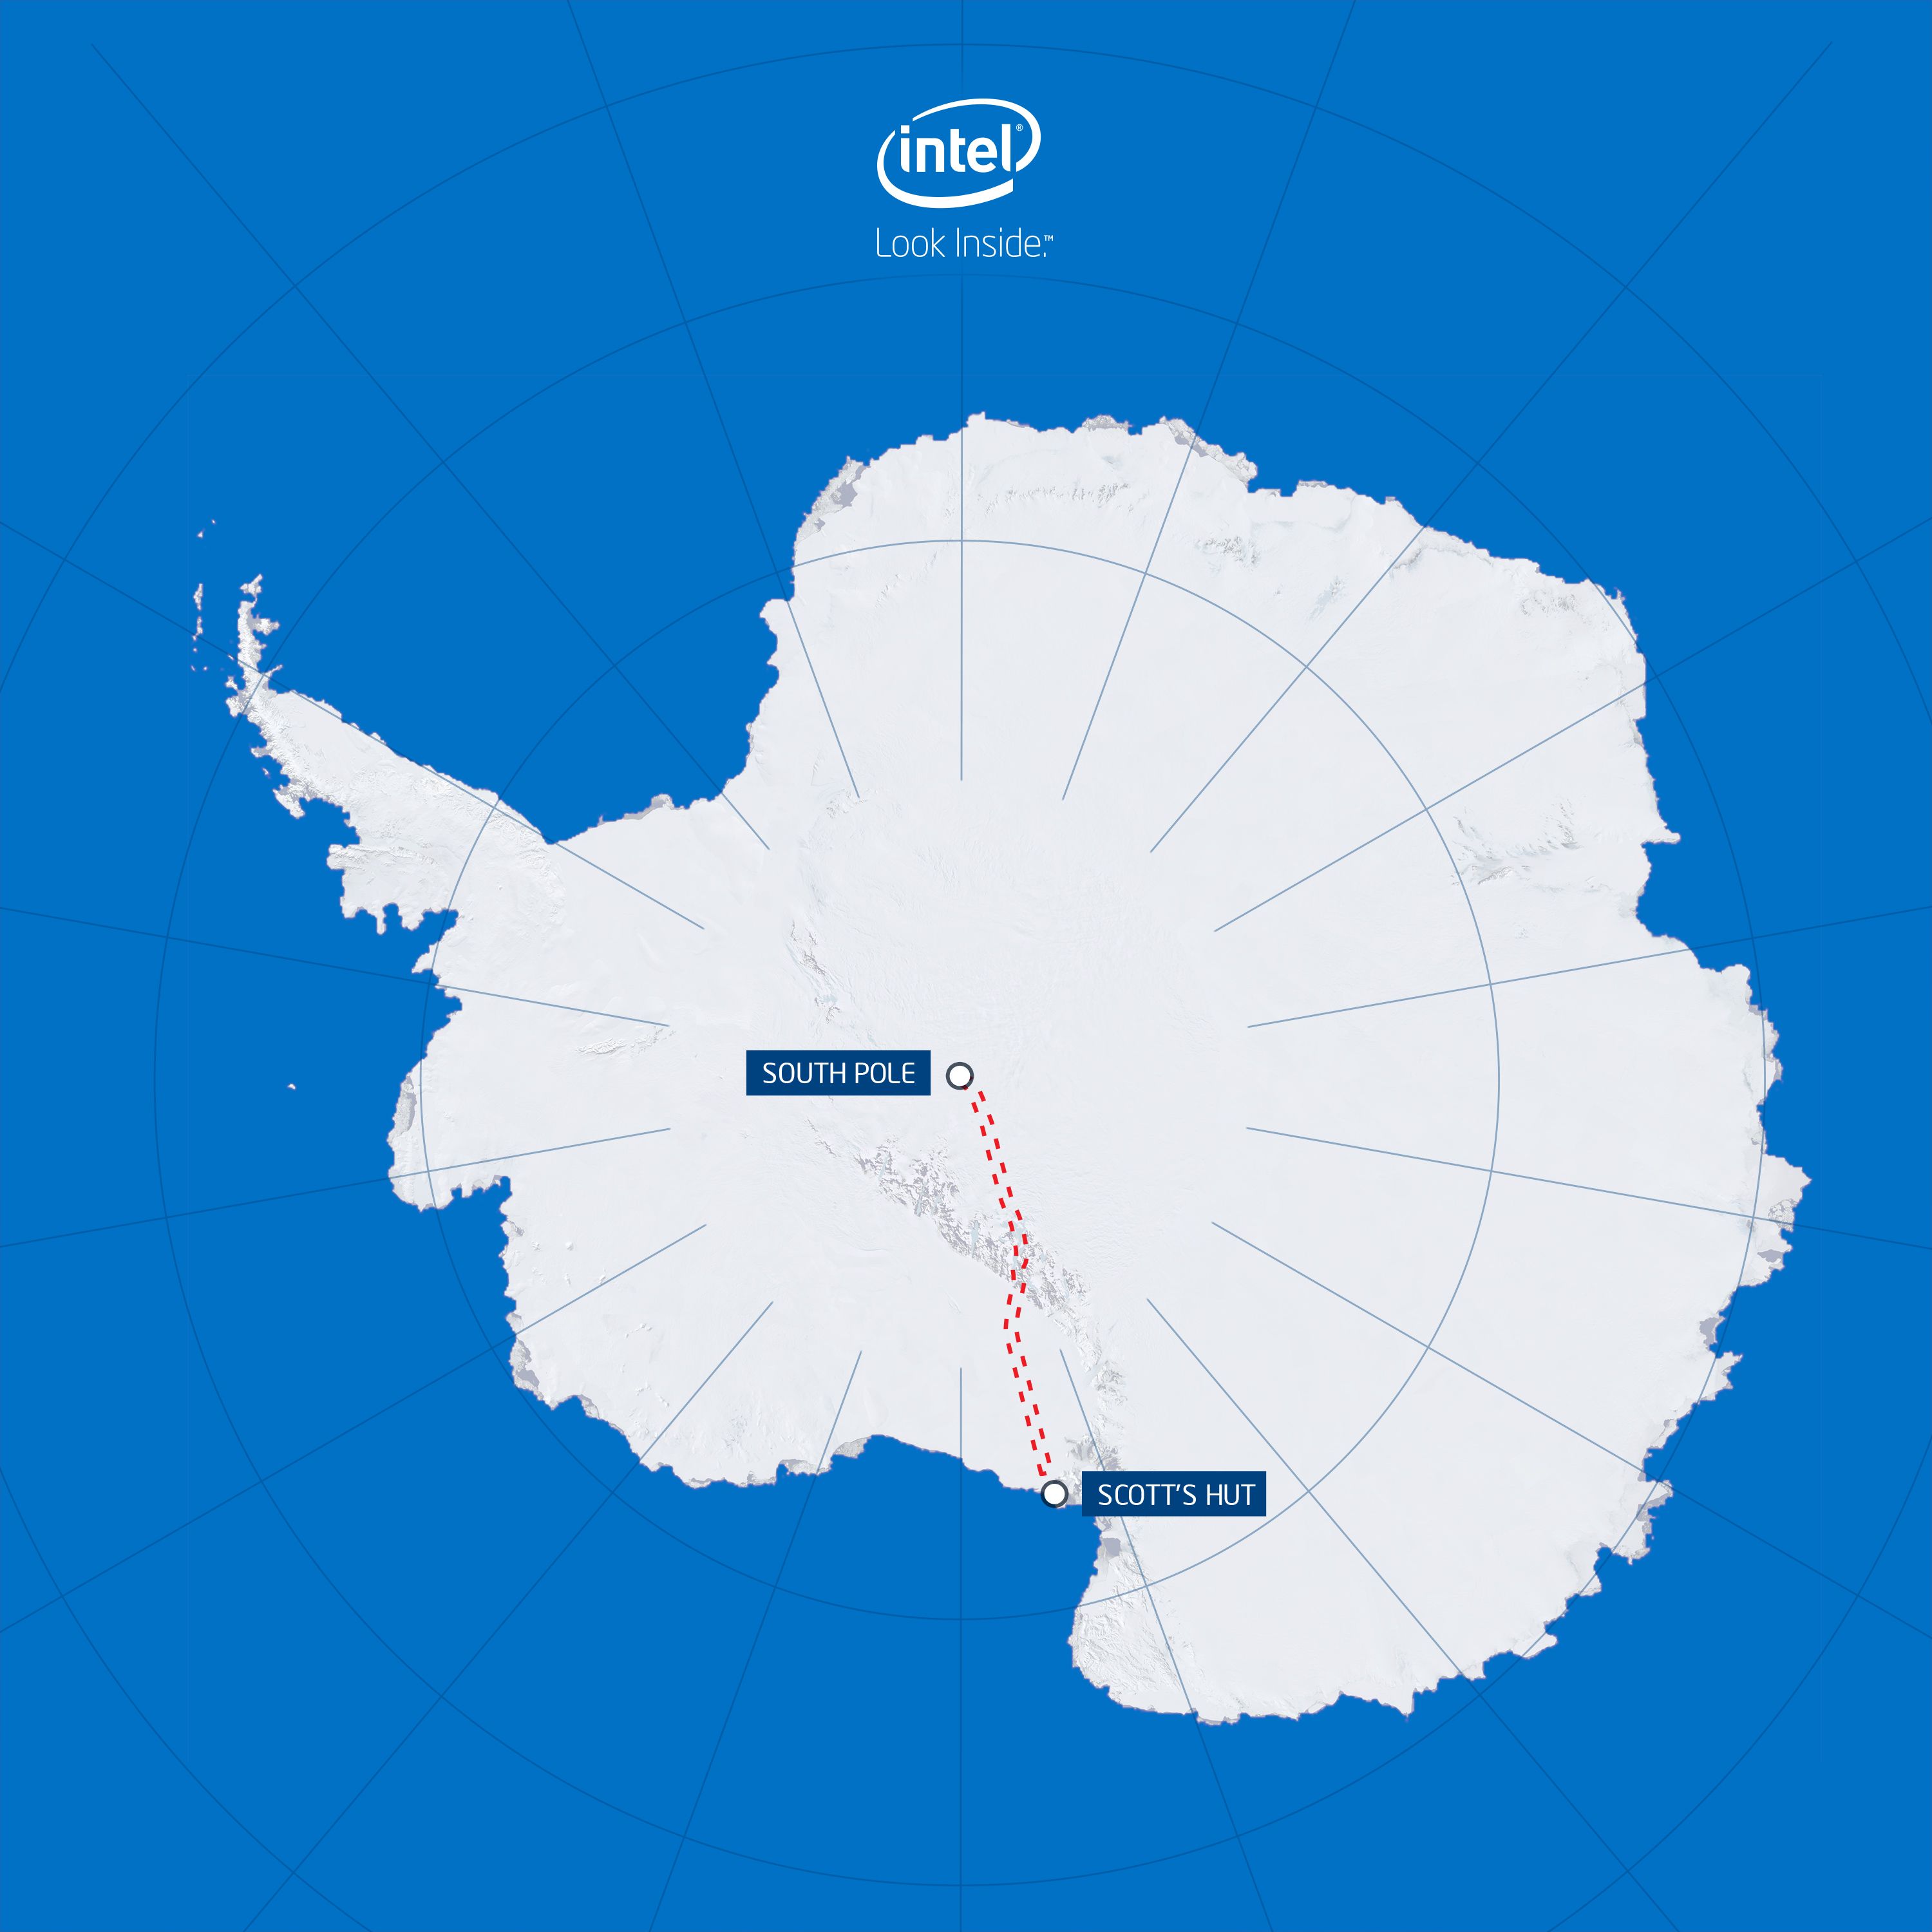 Герб антарктиды. Станция Амундсен Скотт в Антарктиде на карте. Экспедиция Скотта в Антарктиду маршрут на карте Антарктиды.